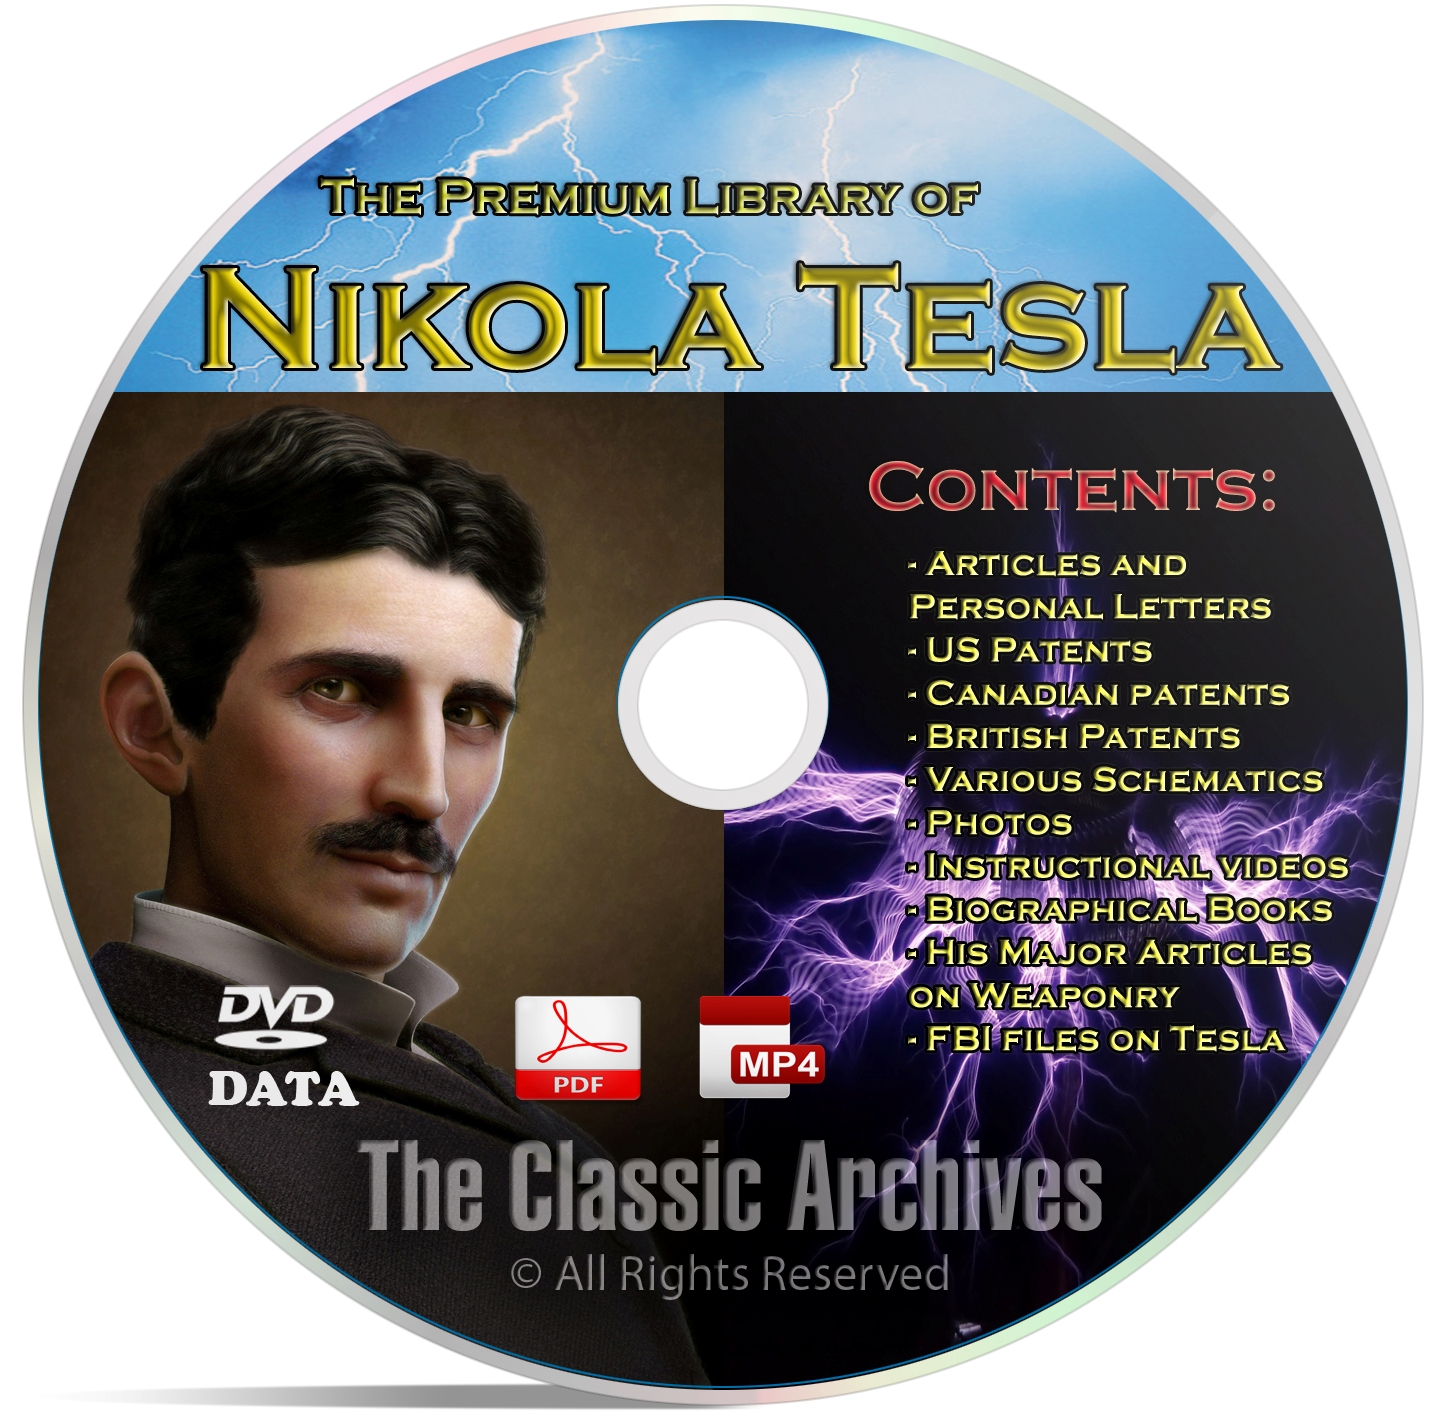 Nikola Tesla 325+ Book Library, Patents, Articles, Alternative Energy DVD